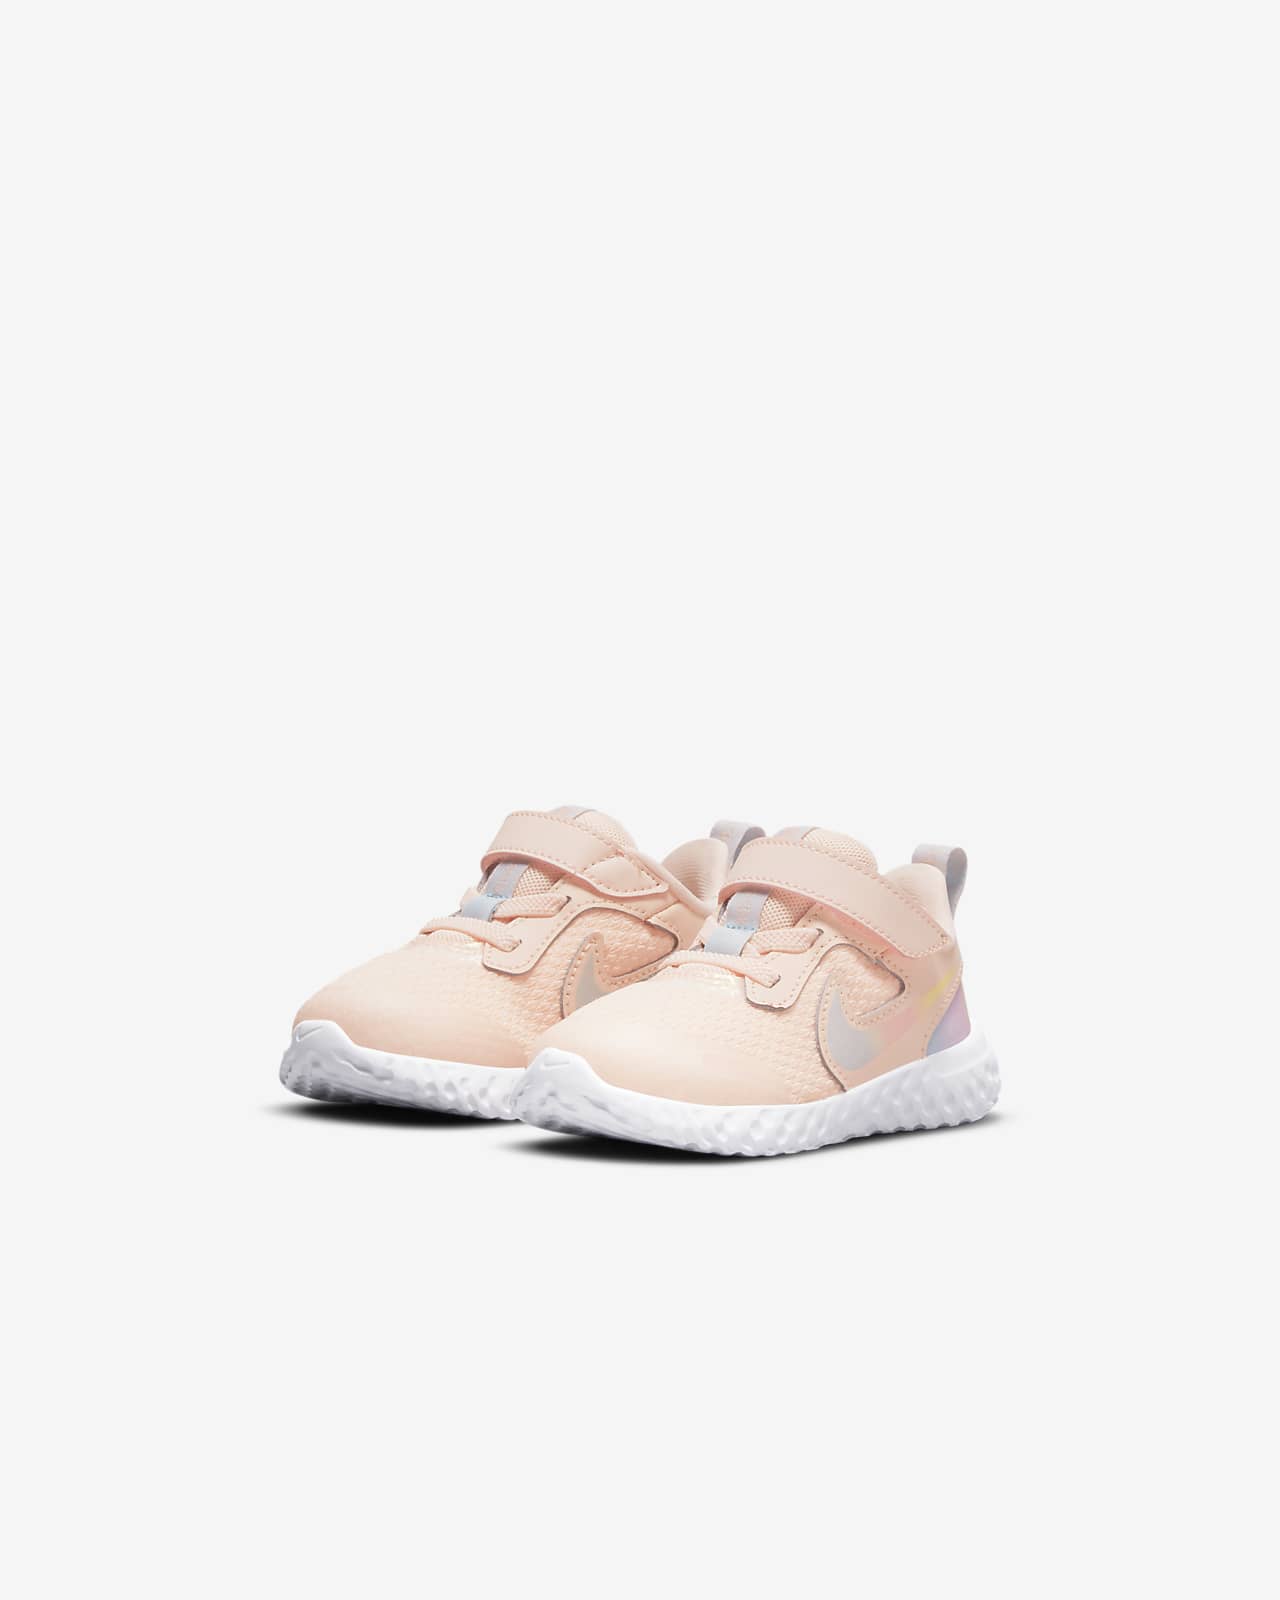 Toddler Shoe. Nike LU